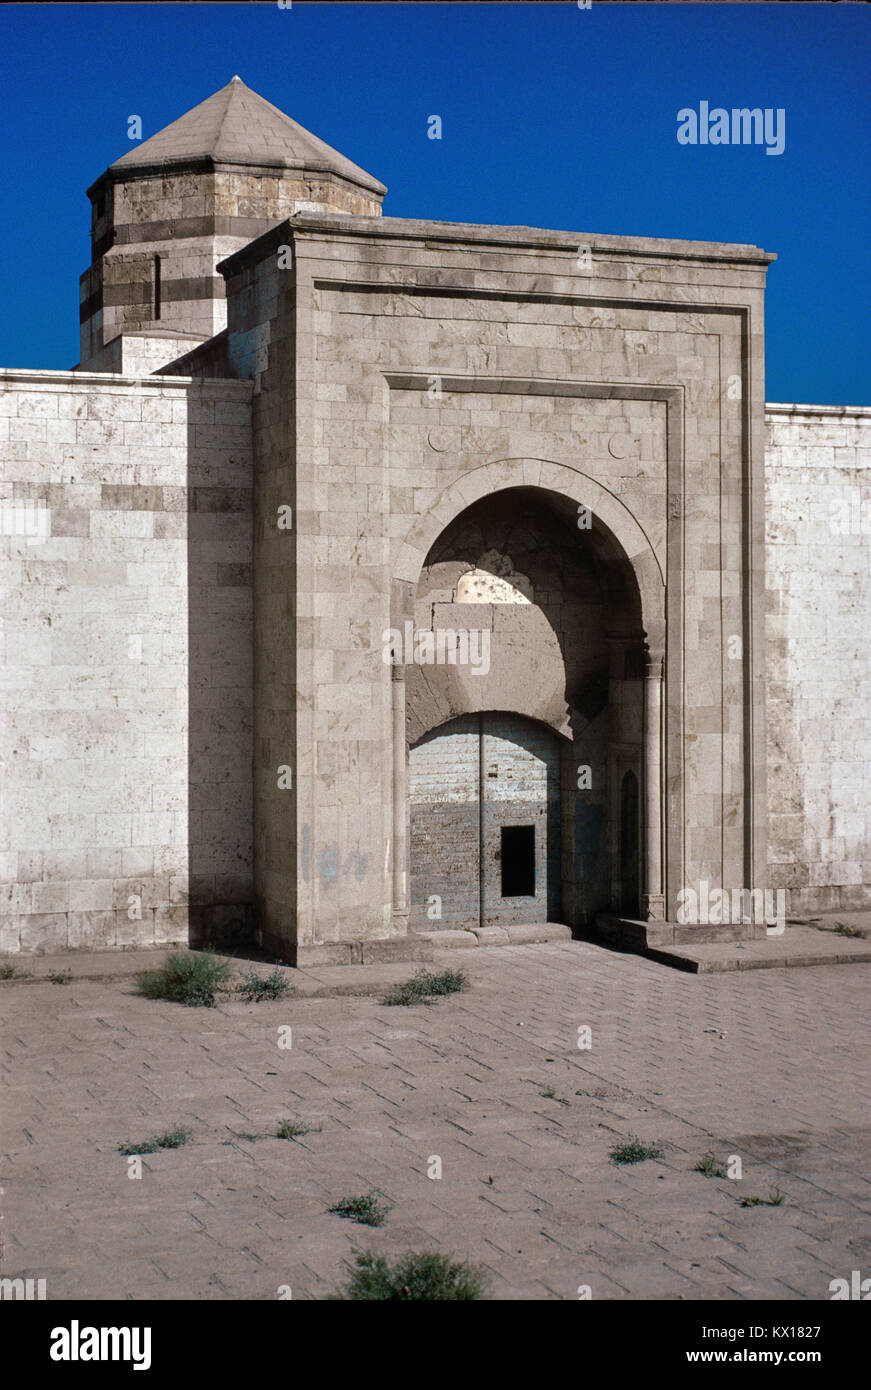 Entrée principale de caravansérails, Horozlu Caeravanserai une ère seldjoukide, construit 1246-1249, près de Konya, Turquie Banque D'Images